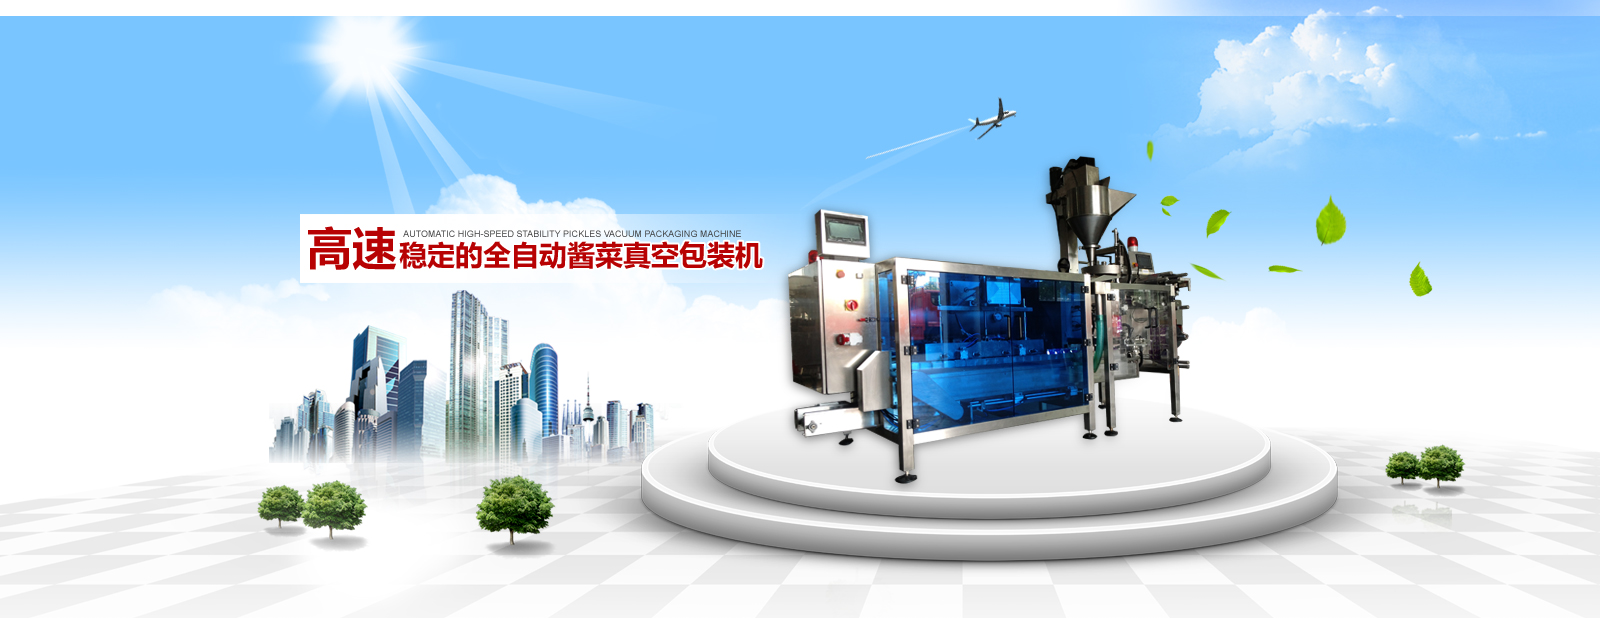 上海三星电子化建公司西藏南路五金店